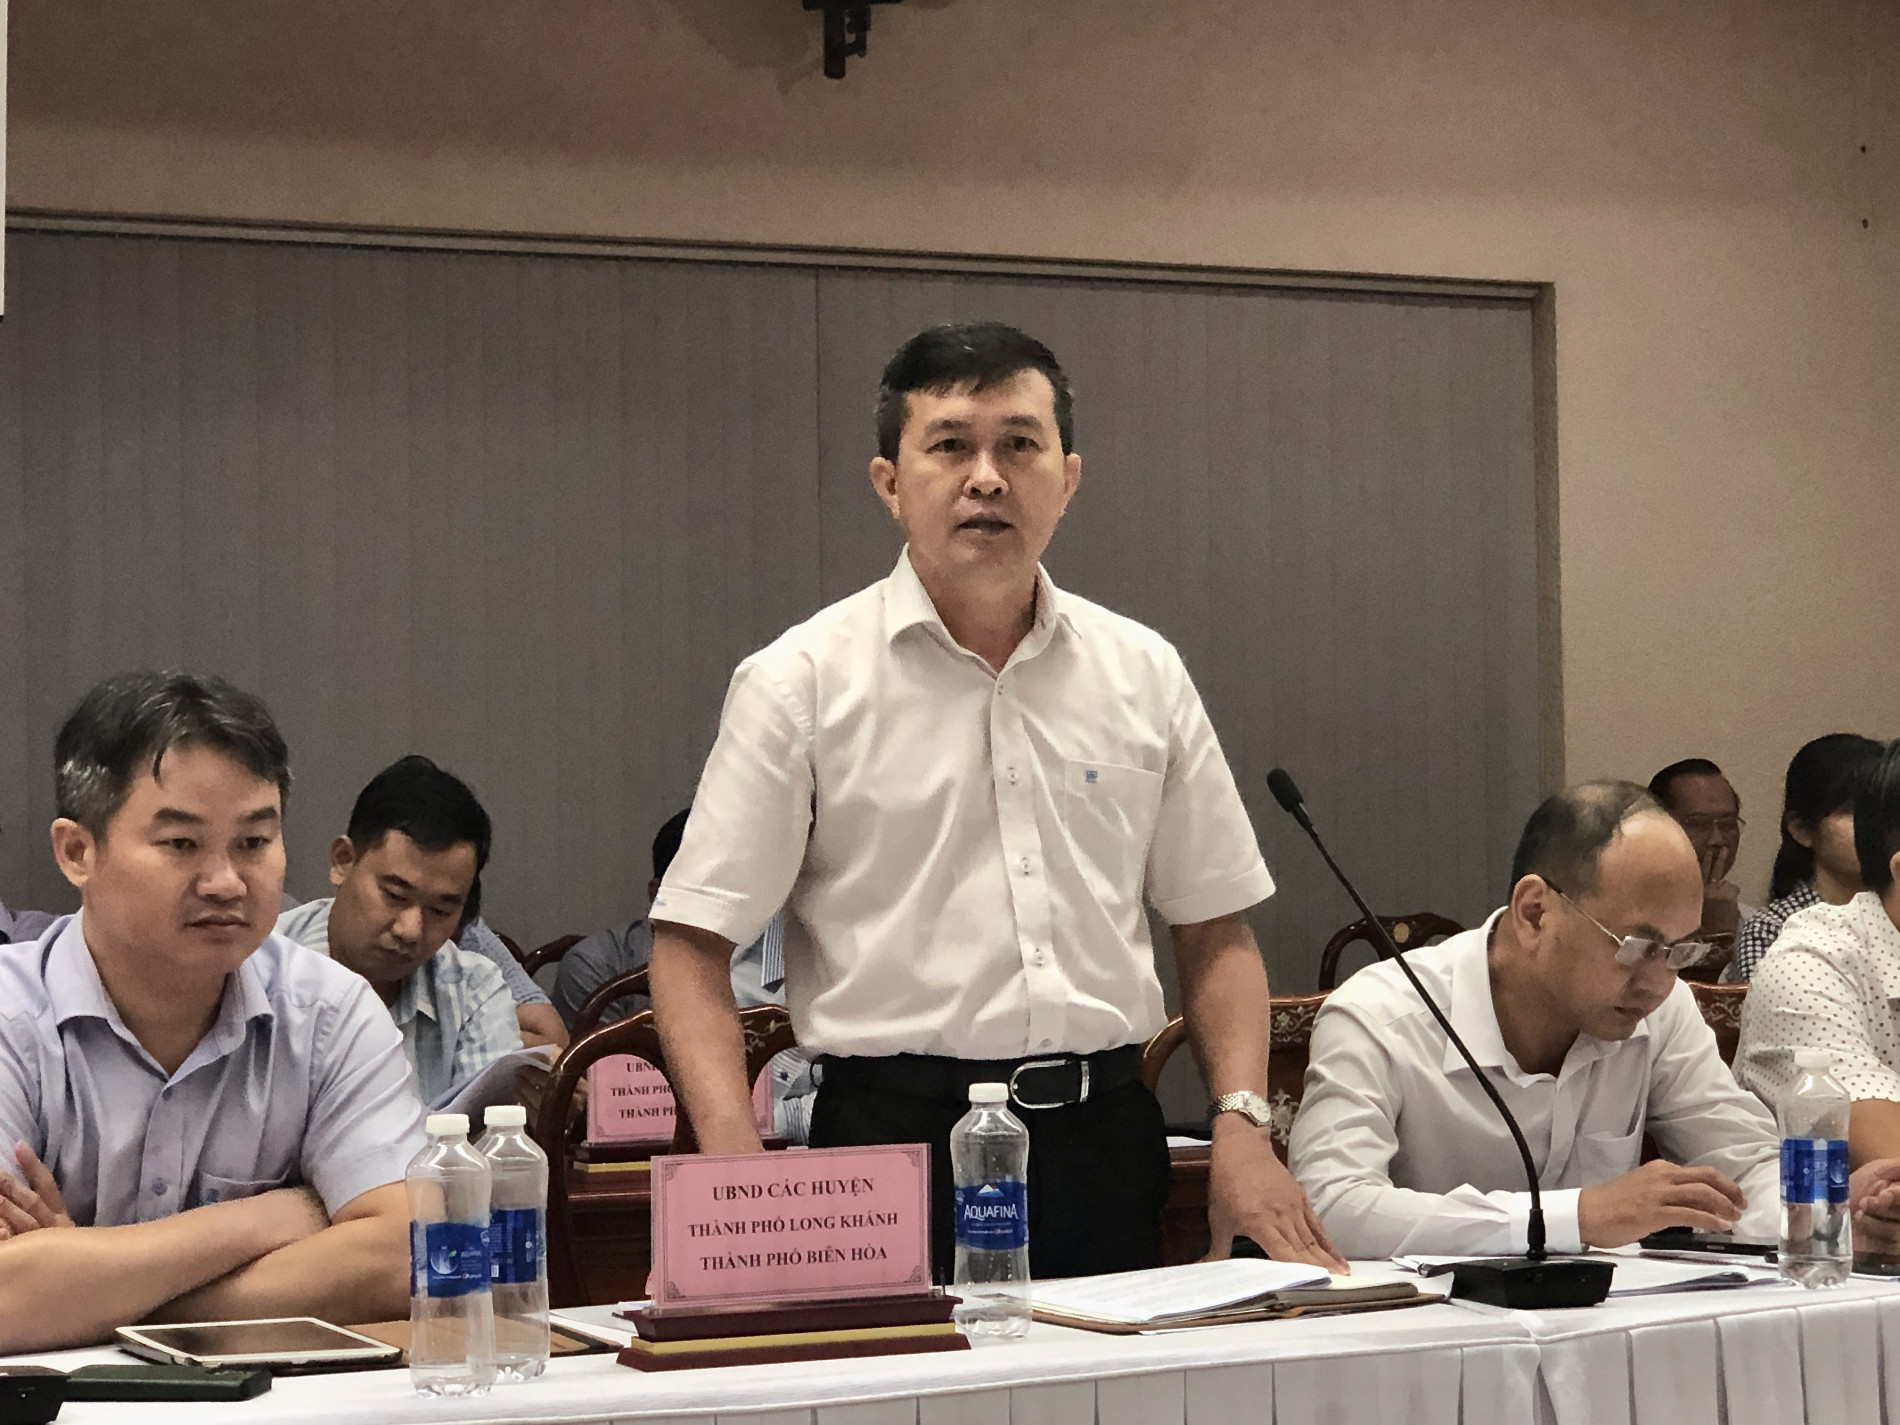 Ông Thái Thanh Phong – Phó Giám đốc Sở Công thương tỉnh Đồng Nai phát biểu tại buổi họp báo